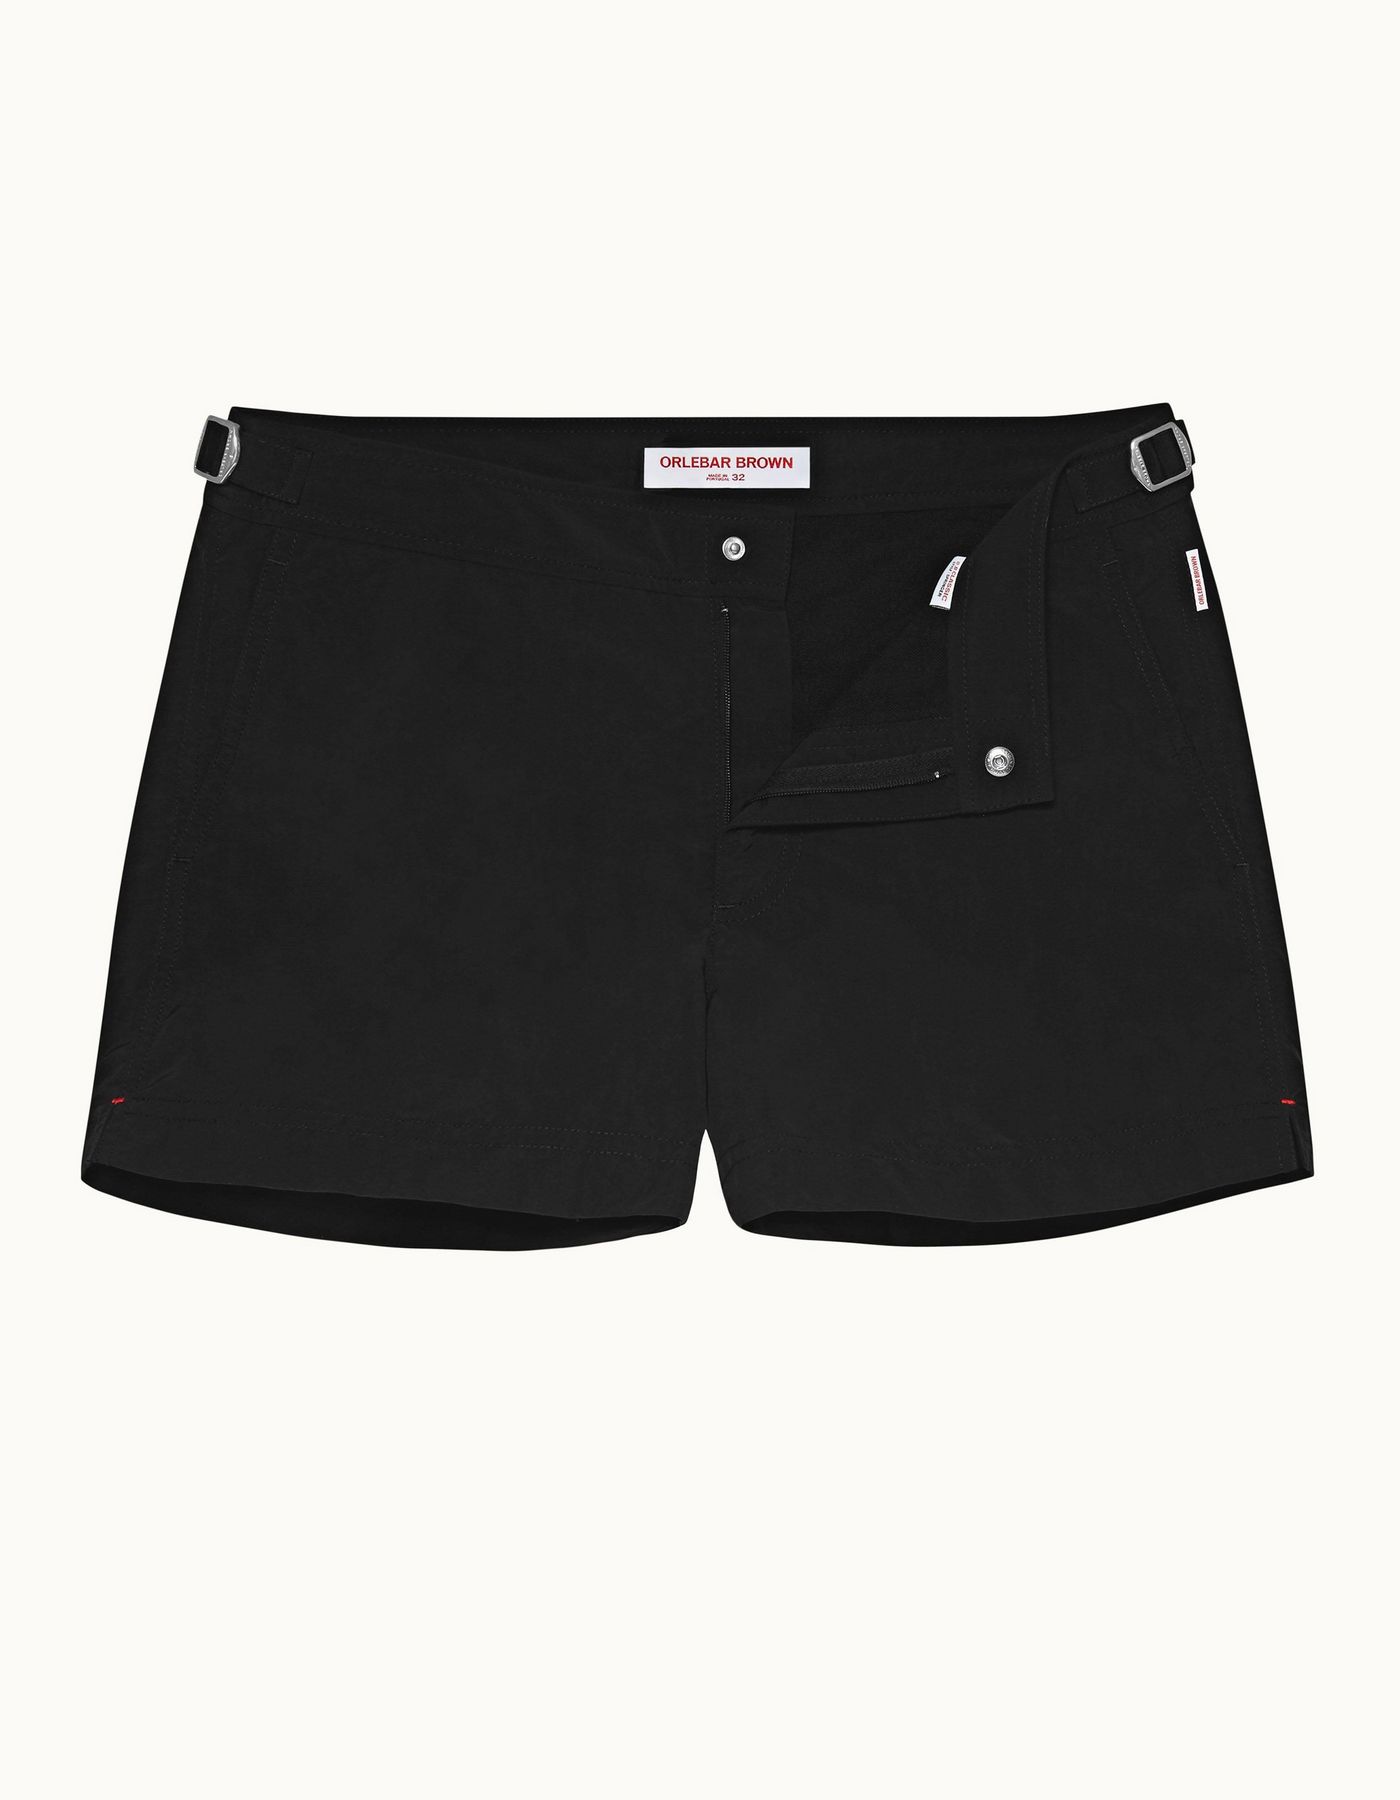 Springer - Mens Black Shortest-Length Swim Shorts